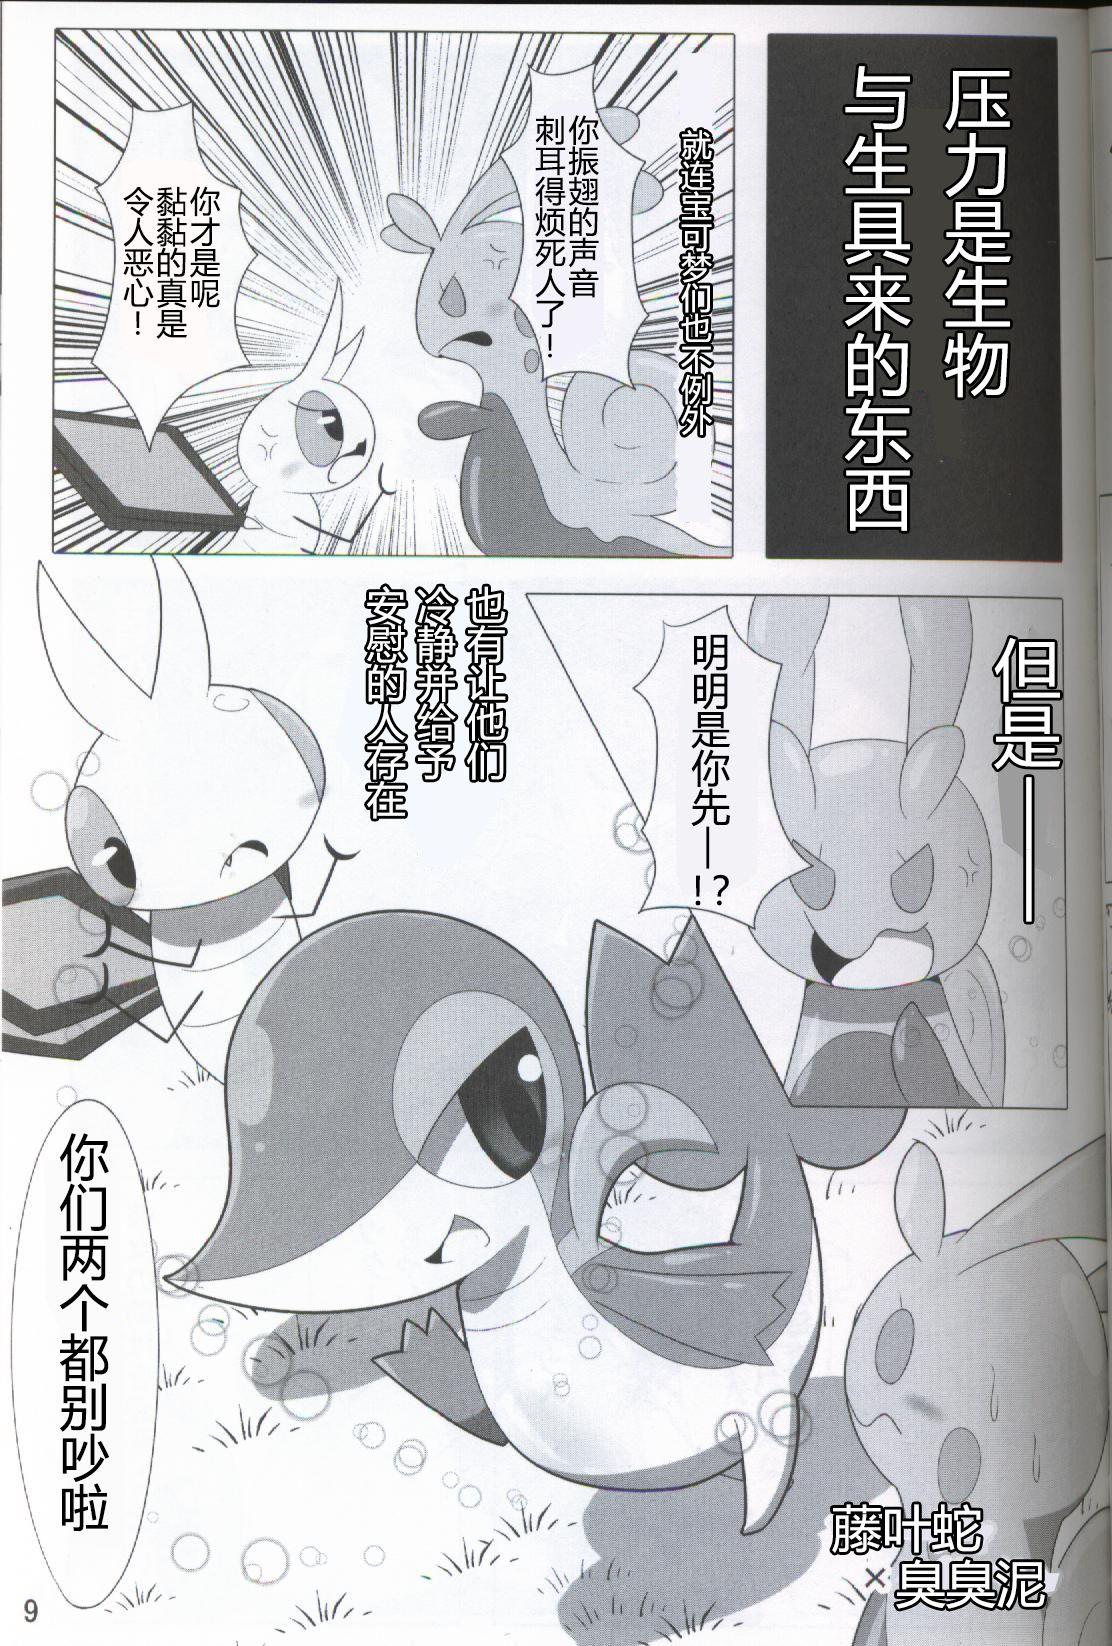 Fuck Pokéda | 宝可堕 - Pokemon Monstercock - Page 10